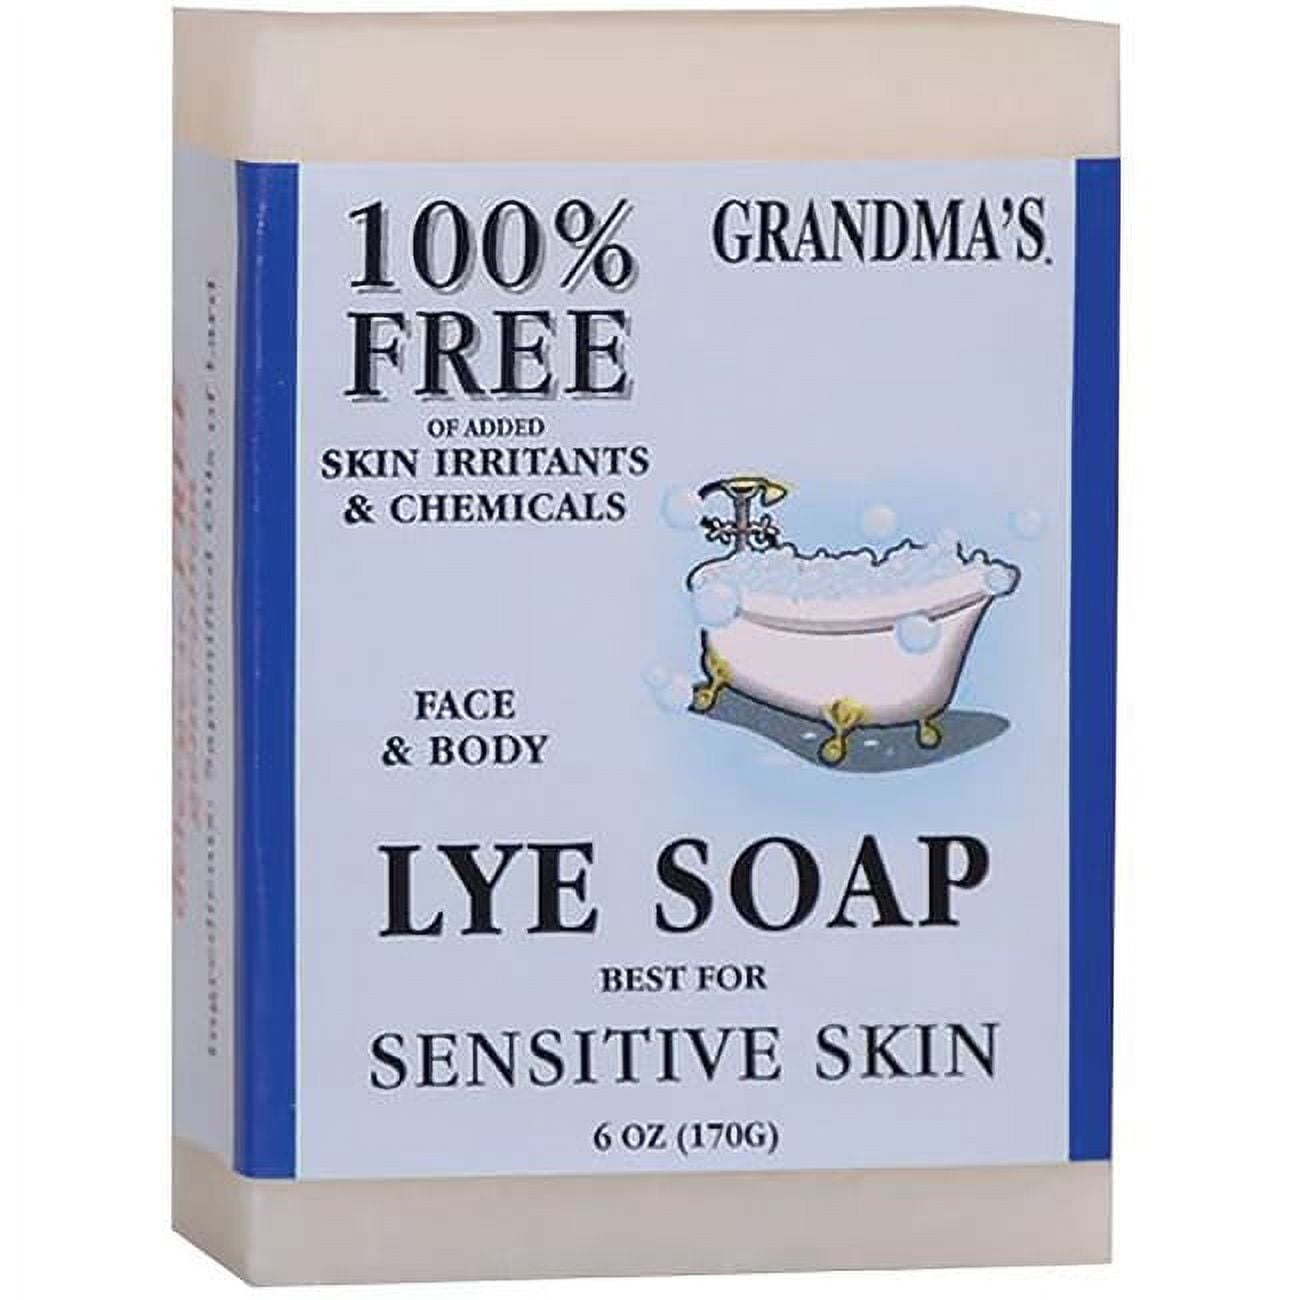 Is Lye Soap Safe?